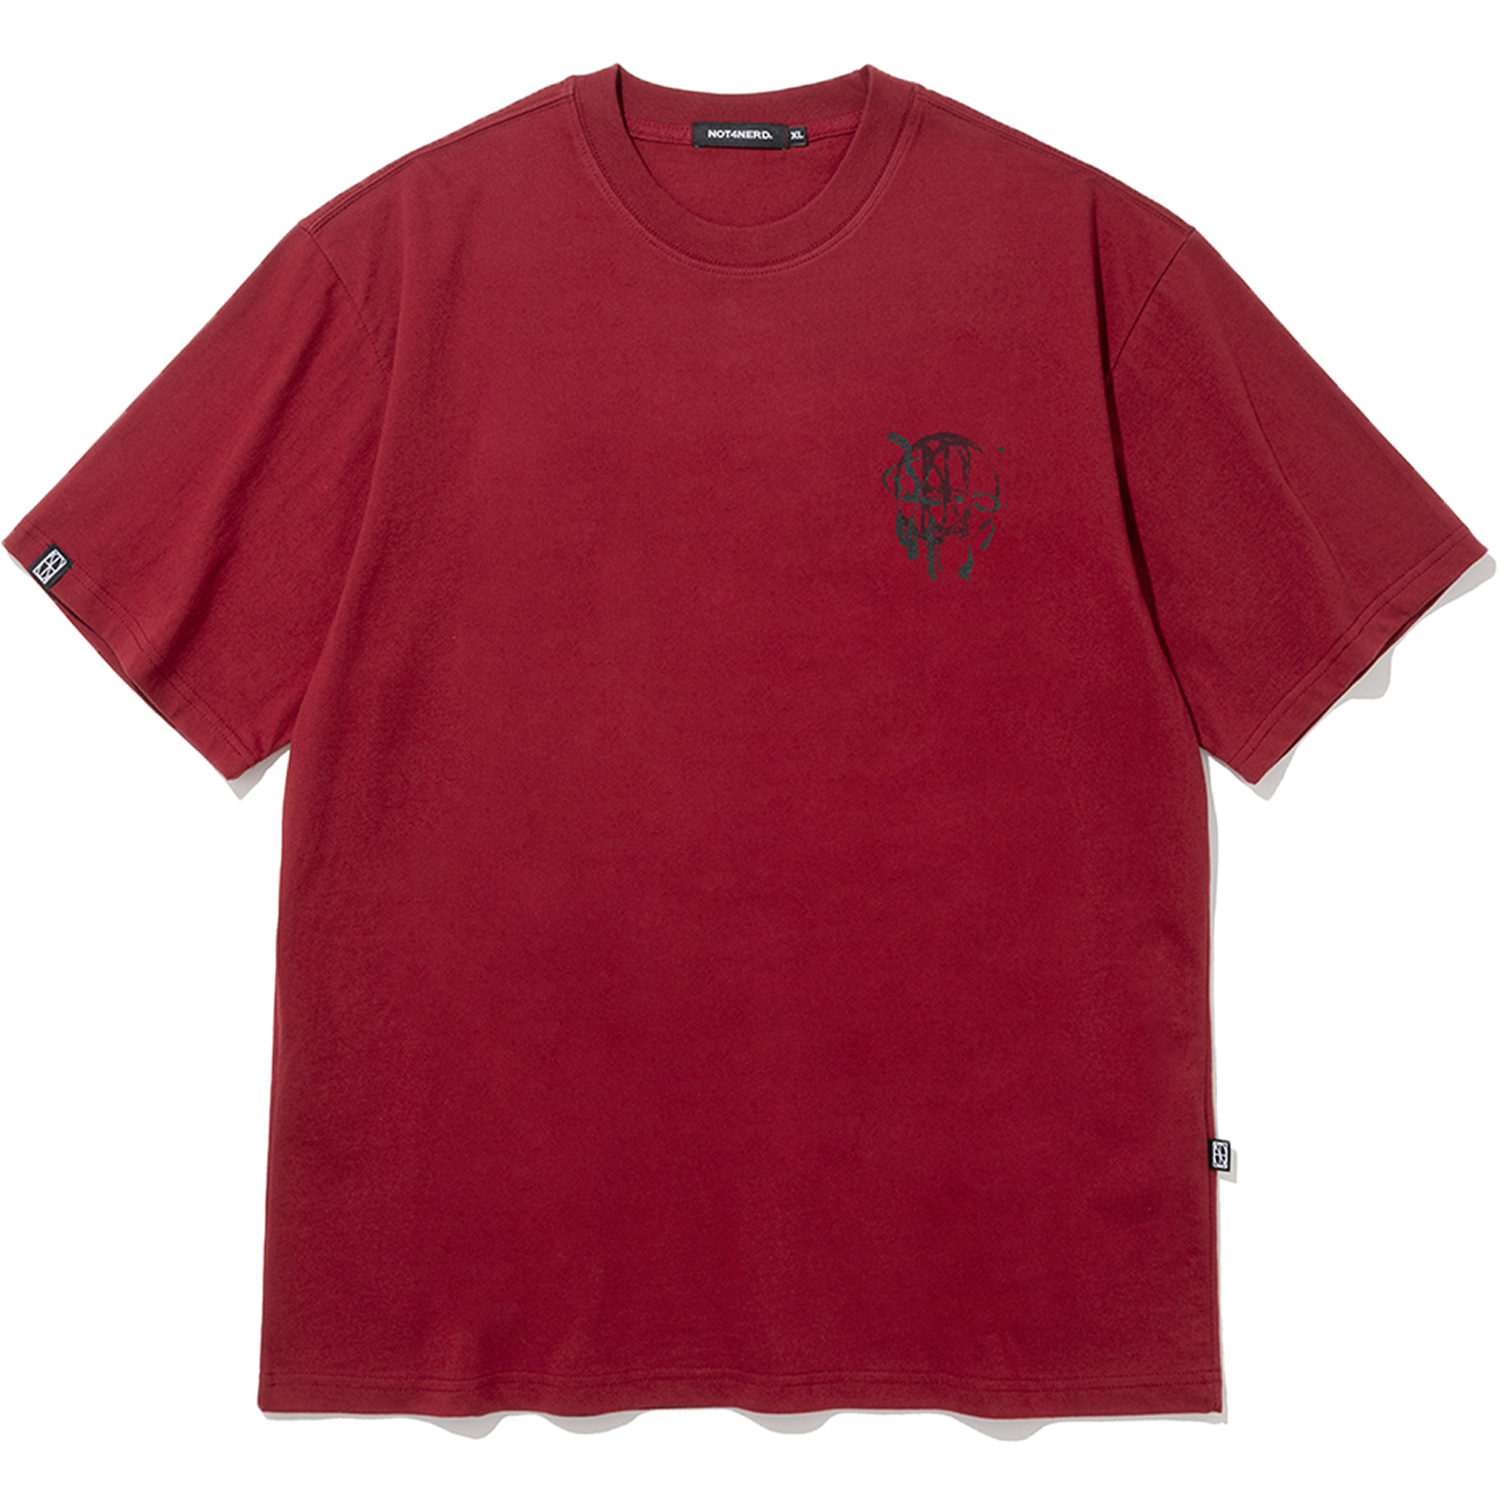 [4월 19일 예약배송] Wine Glass T-Shirts - Red,NOT4NERD